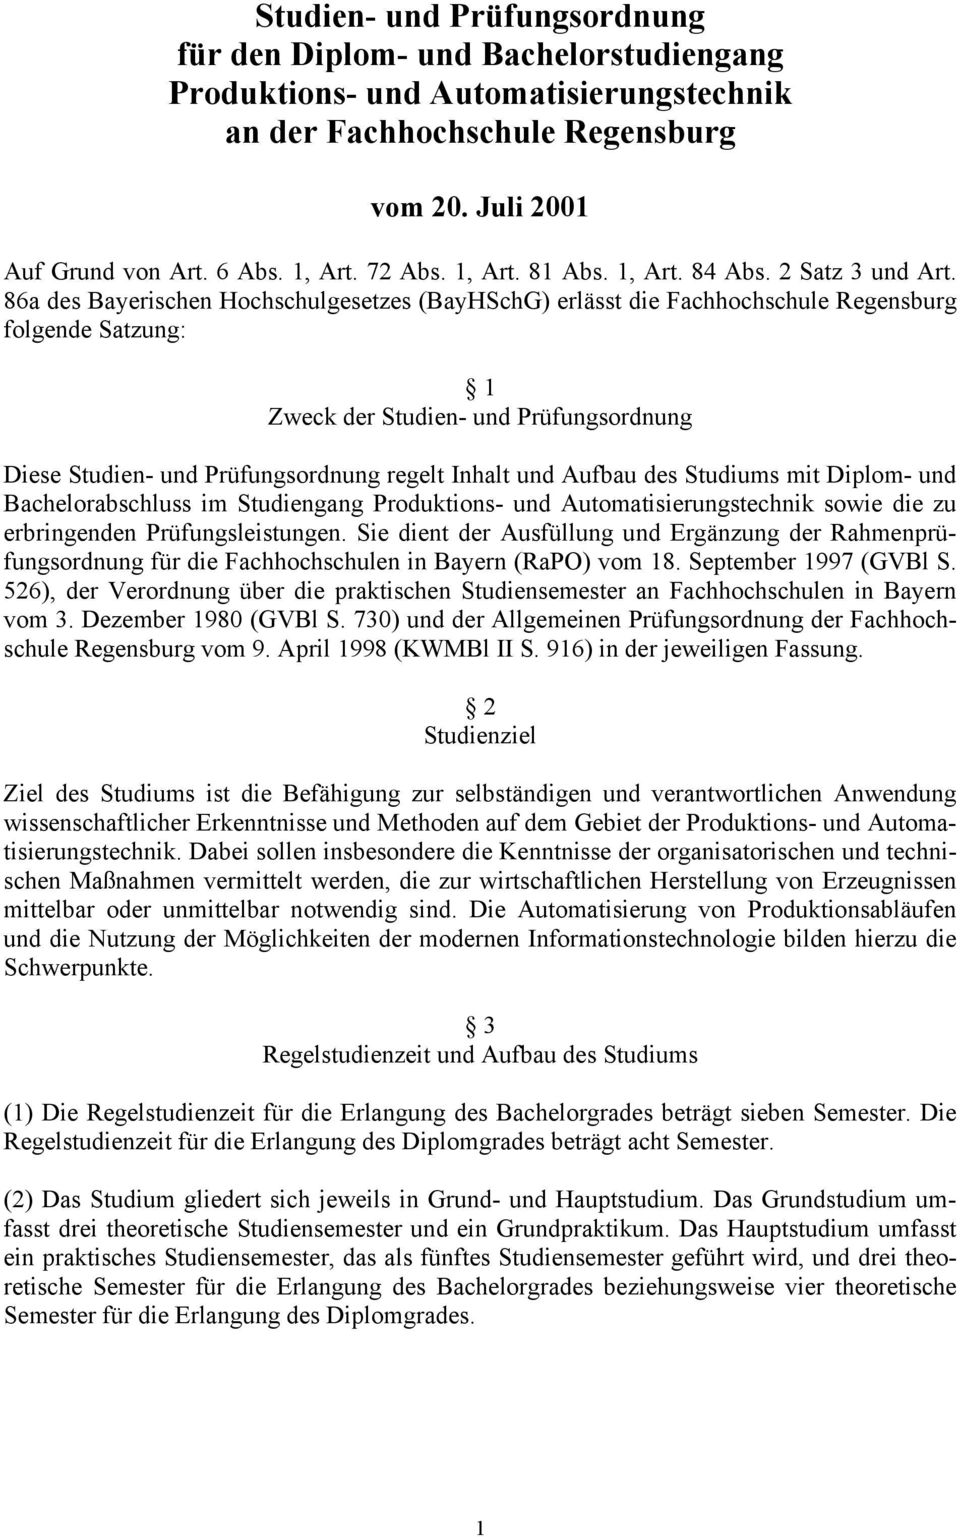 86a des Bayerischen Hochschulgesetzes (BayHSchG) erlässt die Fachhochschule Regensburg folgende Satzung: 1 Zweck der Studien- und Prüfungsordnung Diese Studien- und Prüfungsordnung regelt Inhalt und